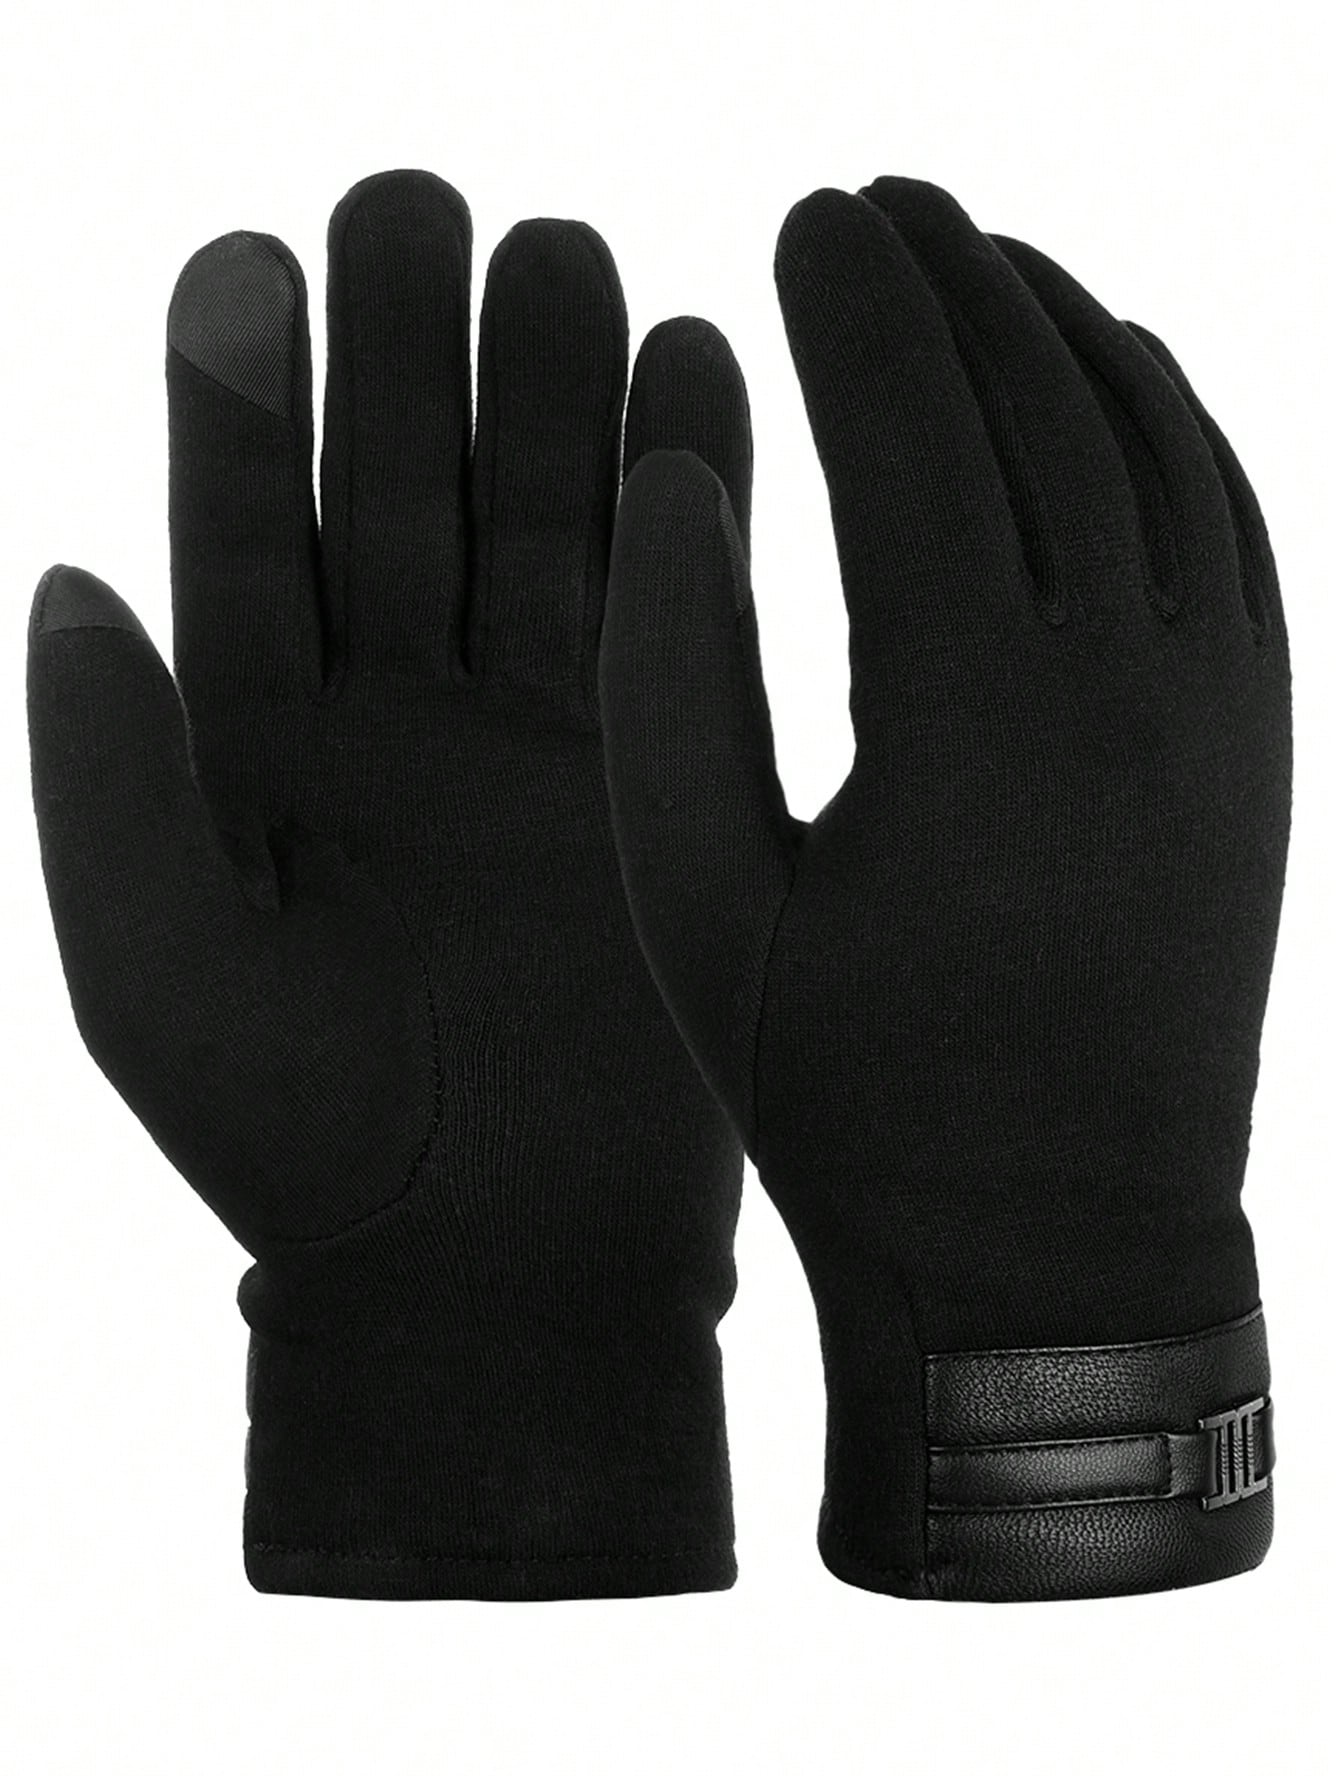 ATARNI Зимние теплые перчатки Перчатки для сенсорного экрана Повседневные перчатки для мужчин, черный перчатки черные с пвх